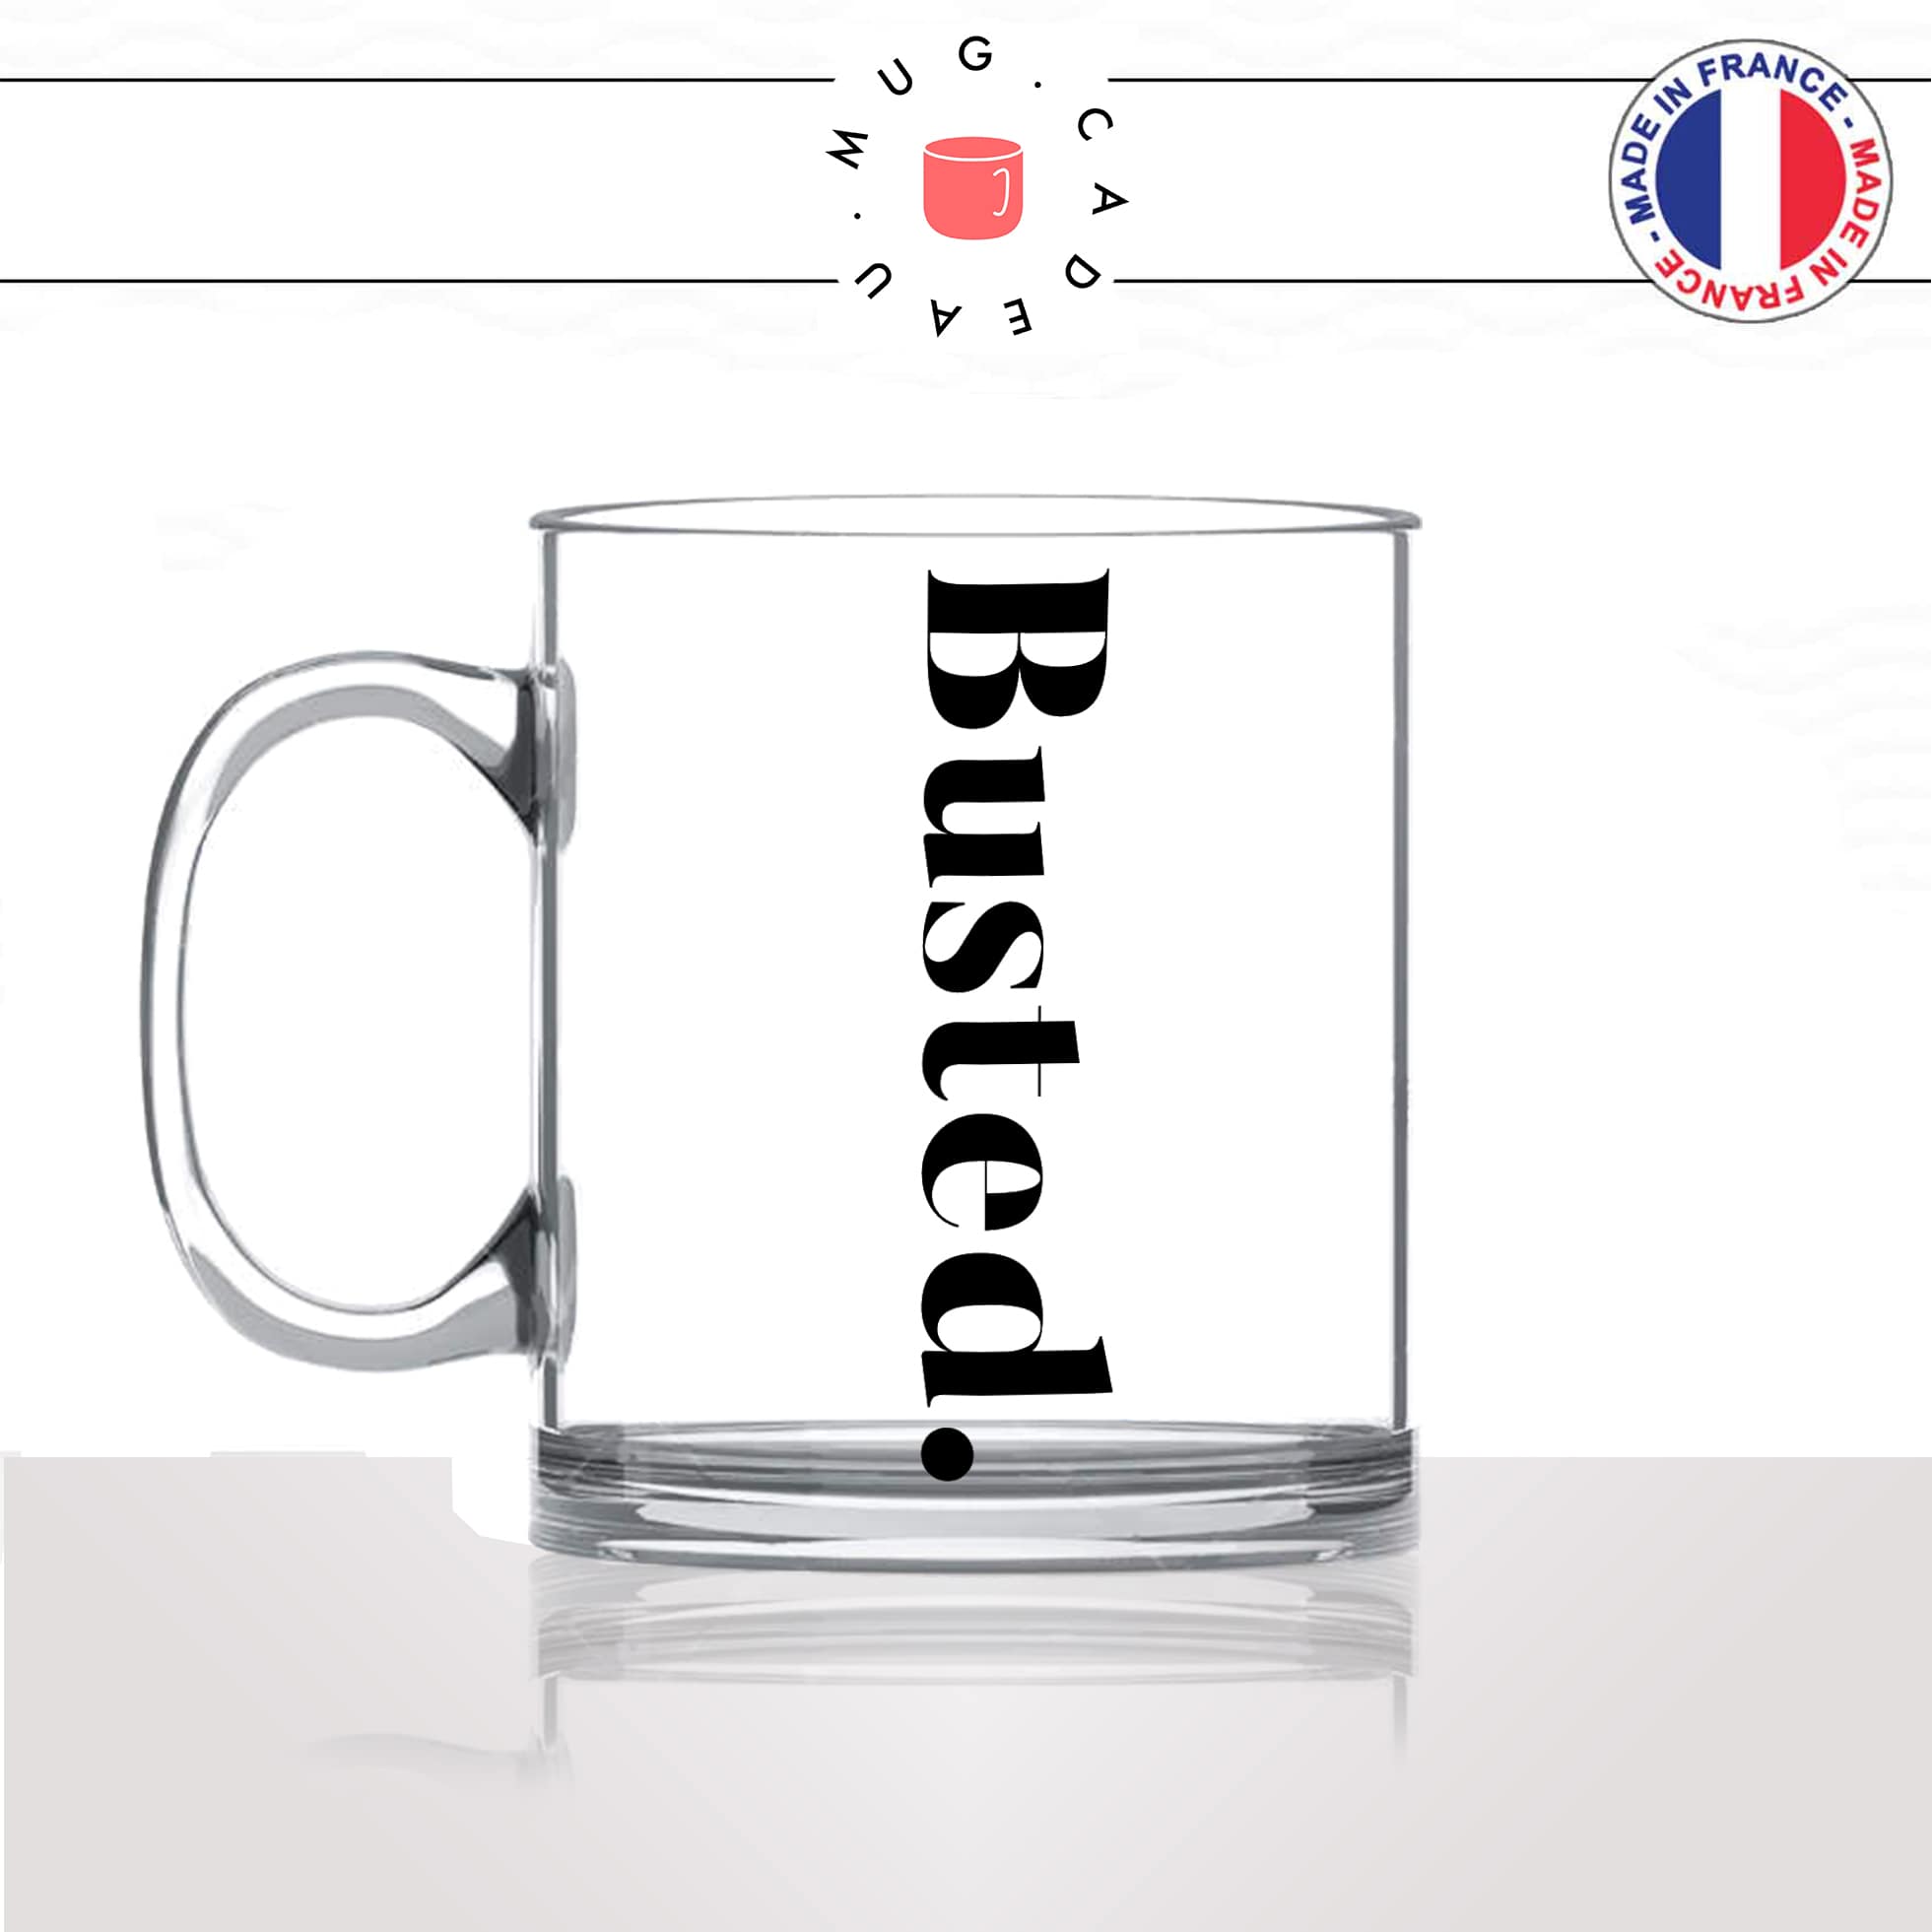 mug-tasse-en-verre-transparent-glass-busted-calligraphie-lettrine-mot-pris-sur-le-fait-anglais-décoration-ami-idée-cadeau-originale-personnalisé-café-thé-min